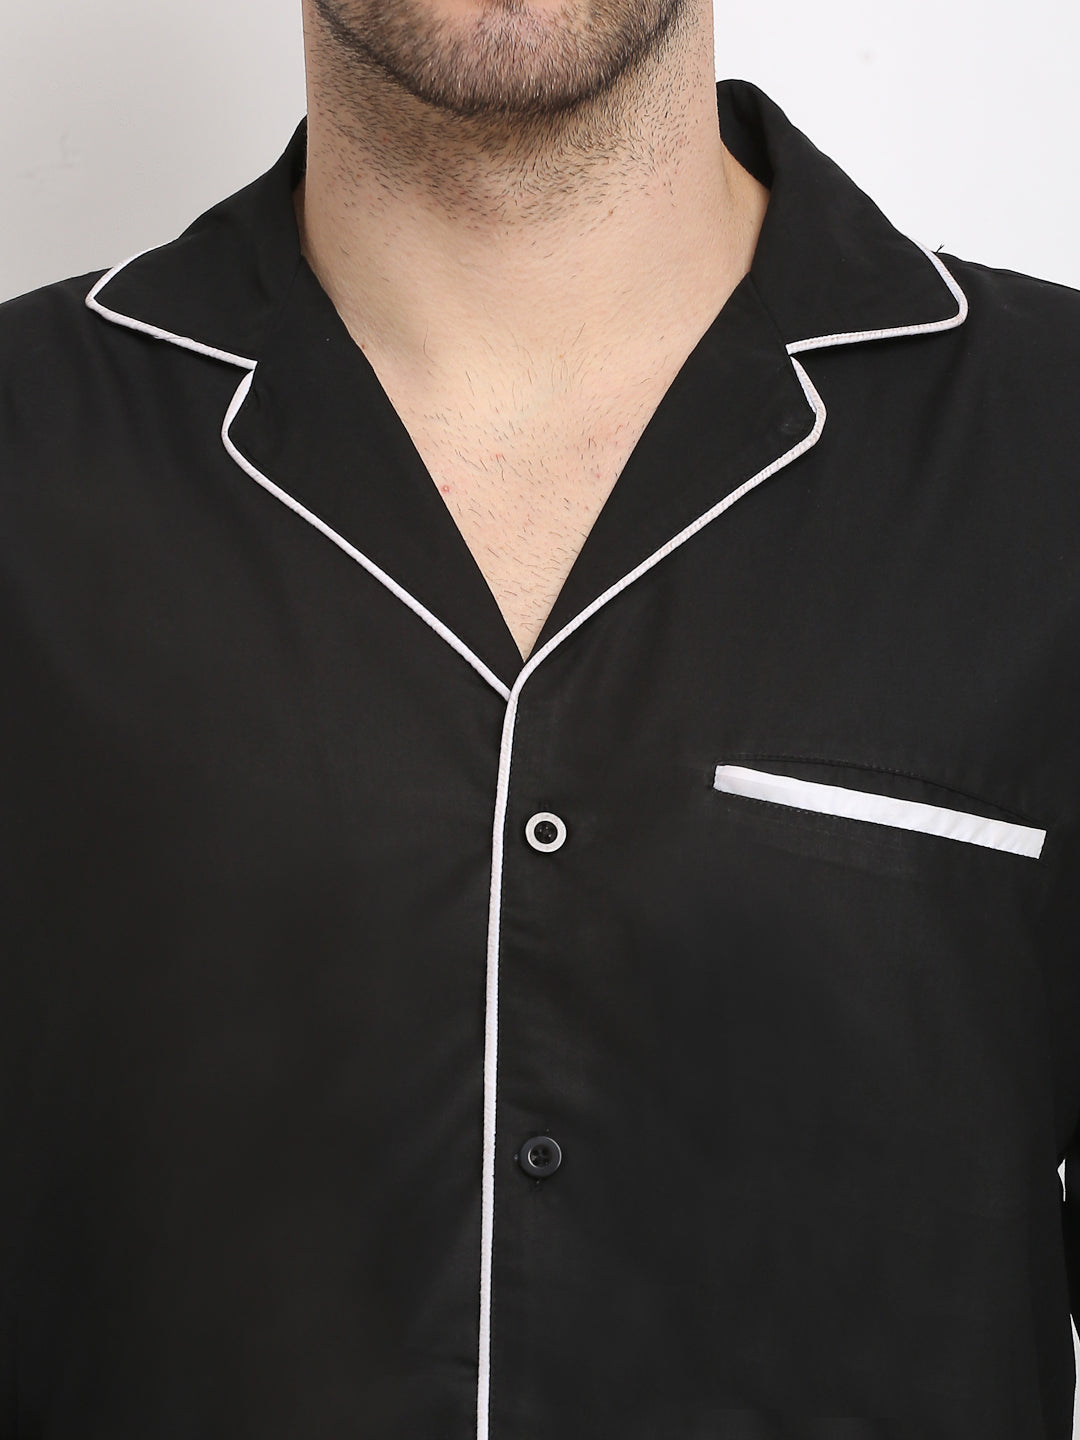 Jainish Men's Black Cotton Solid Night Suits ( GNS 003Black ) - Distacart